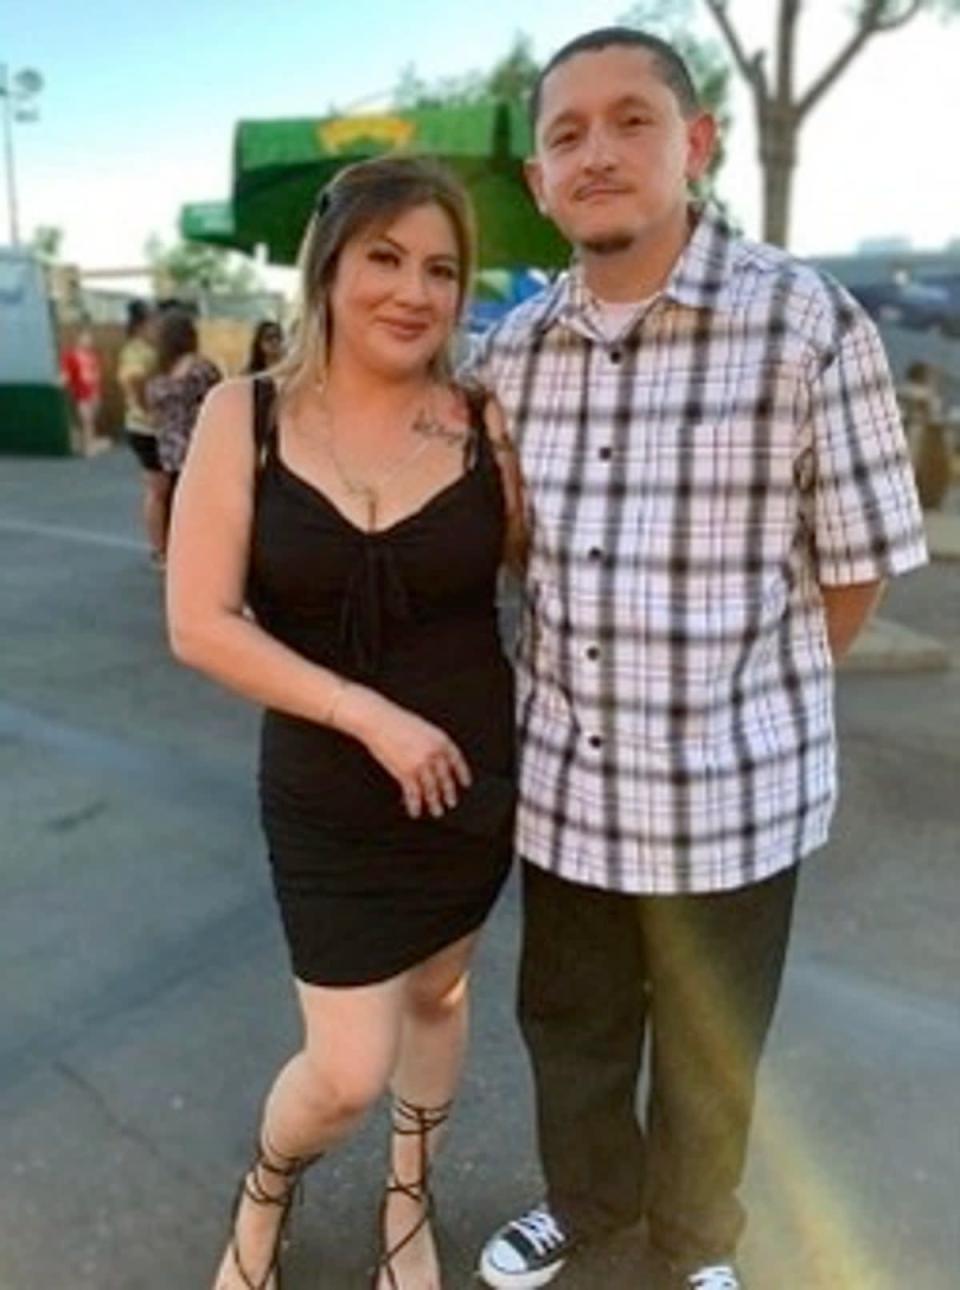 Janette Pantoja, de 29 años, y Juan Almanza Zavala, de 36, habían ido juntos a la exhibición de autos Hot August Nights en Reno, Nevada, la noche del 6 de agosto (Oficina del Sheriff del Condado de Nevada)